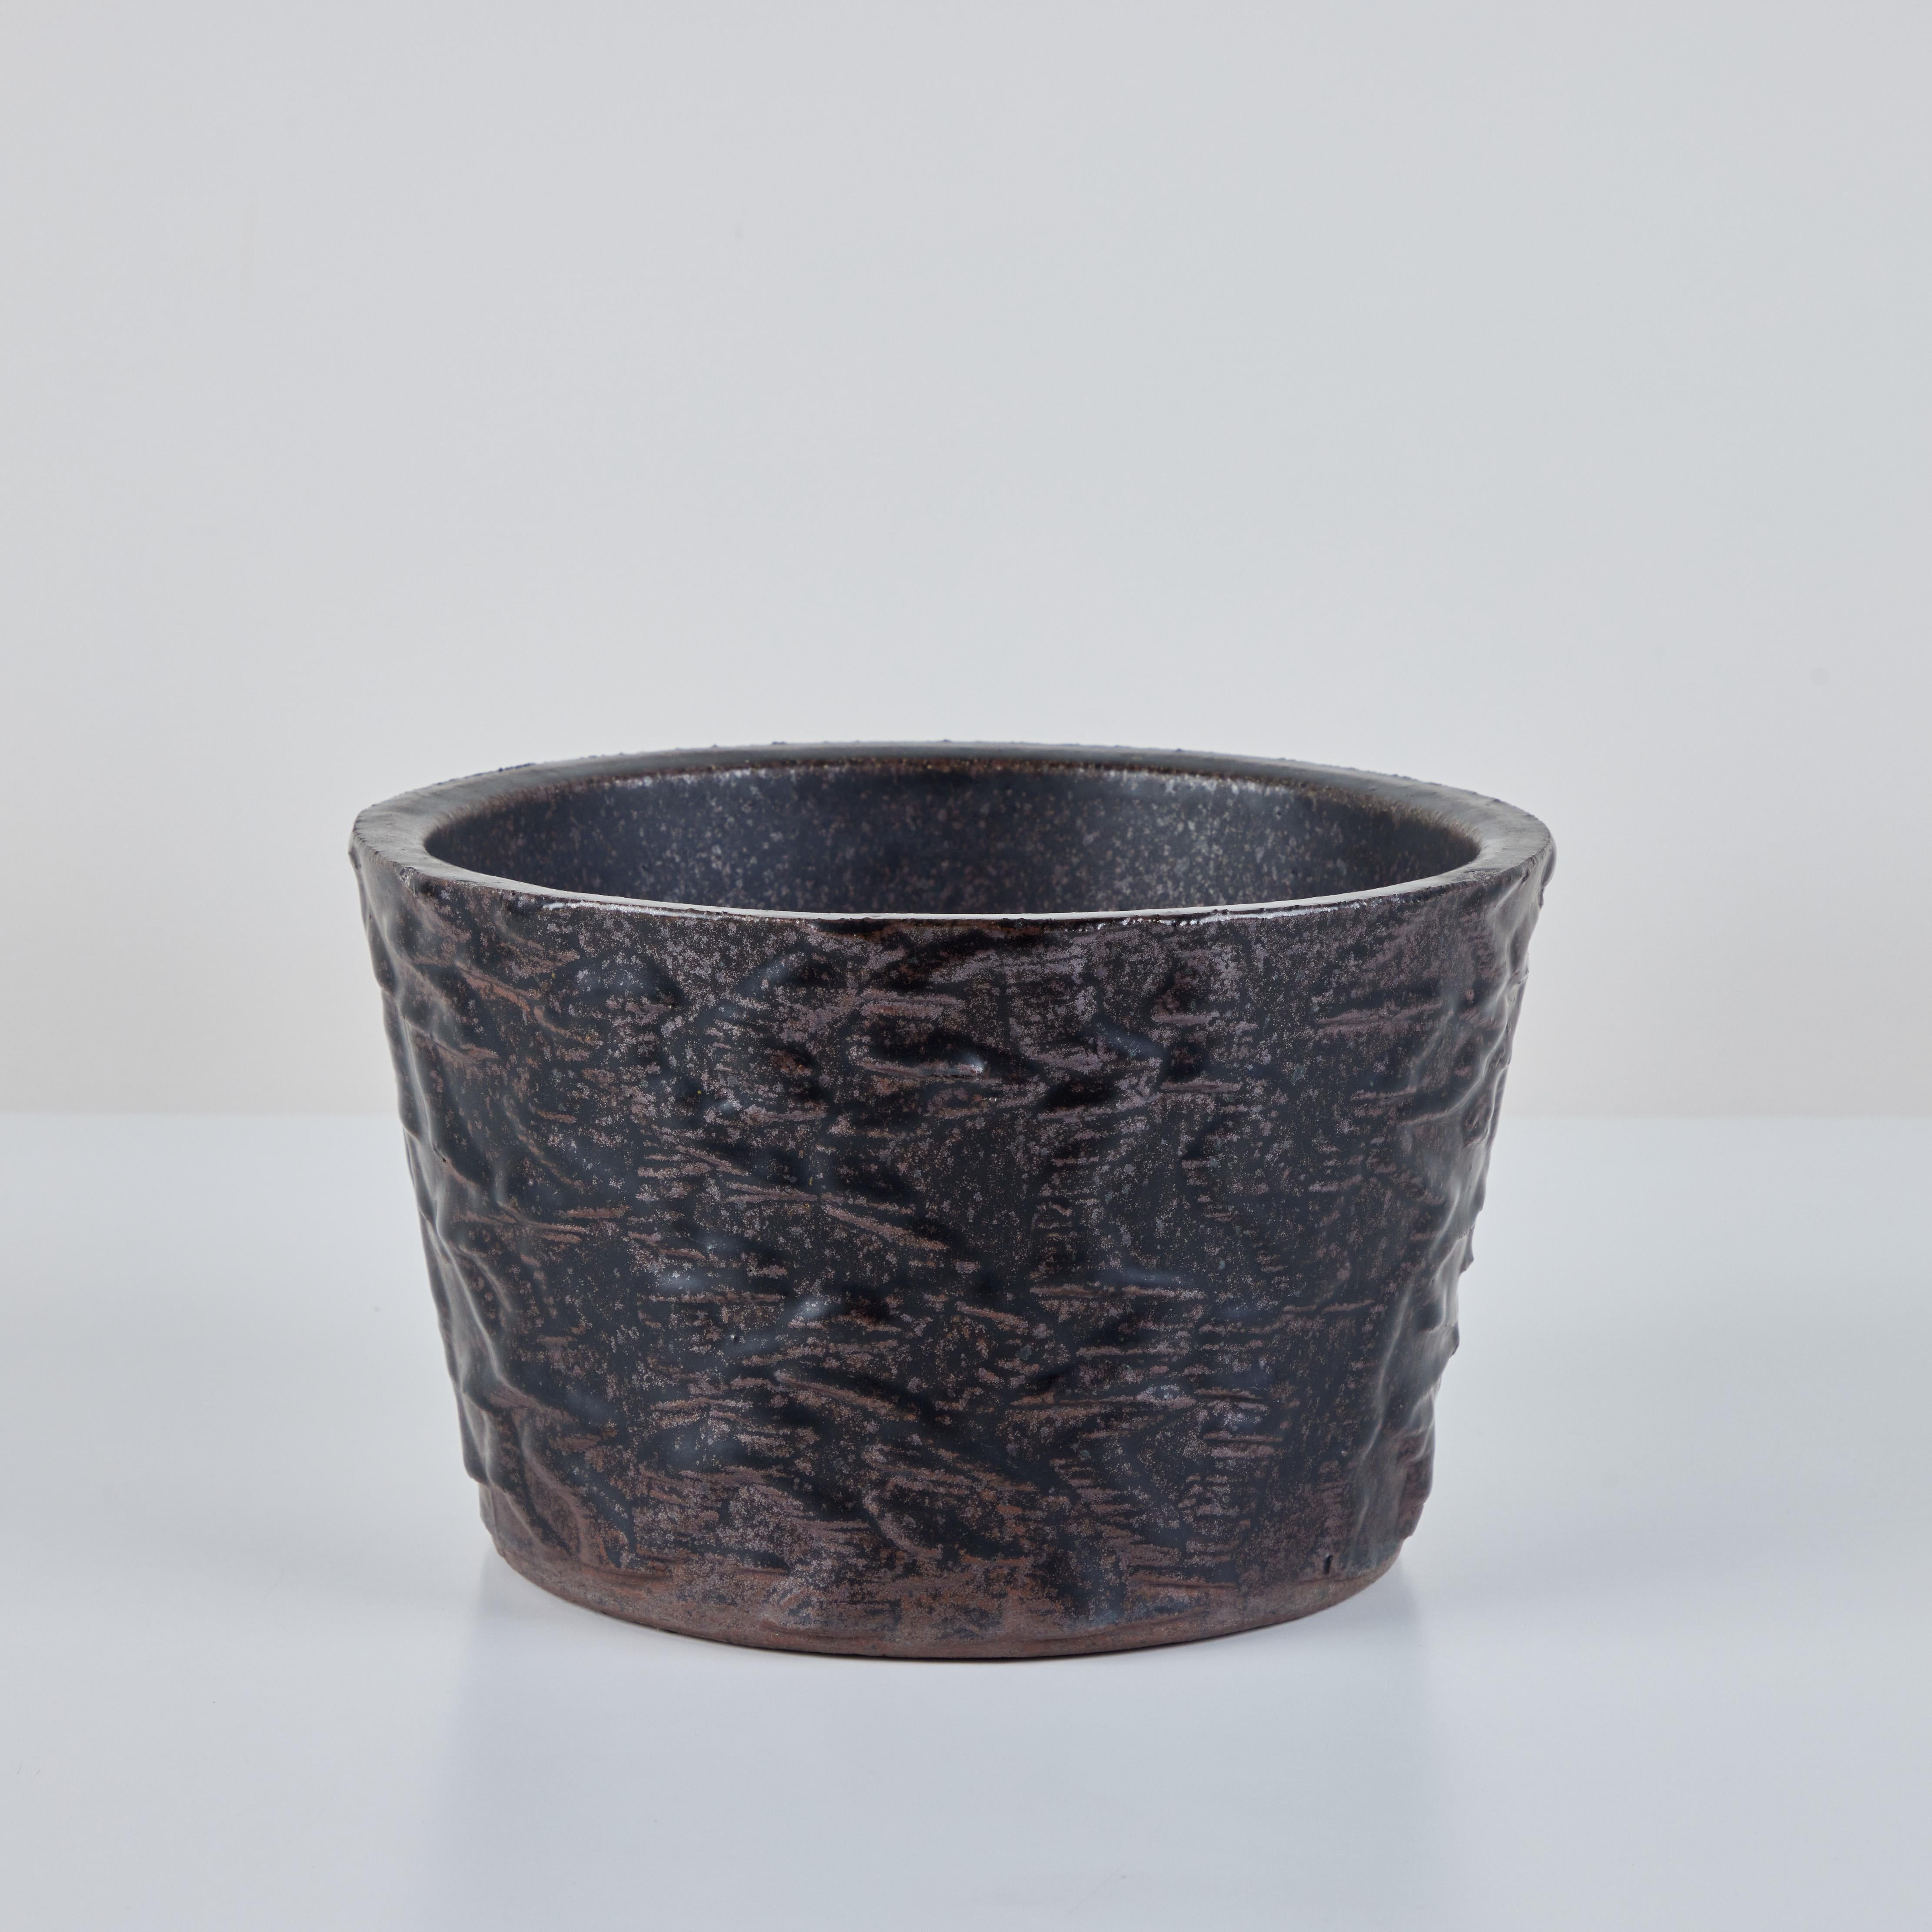 Malcom Leland Pflanzgefäß für Architectural Pottery, ca. 1960er Jahre, USA. Dieses Pflanzgefäß aus Steinzeug hat eine braun-schwarz glasierte Außenseite mit Textur und eine glasierte Innenseite. Die runde Pflanzschale ist nach unten hin leicht nach